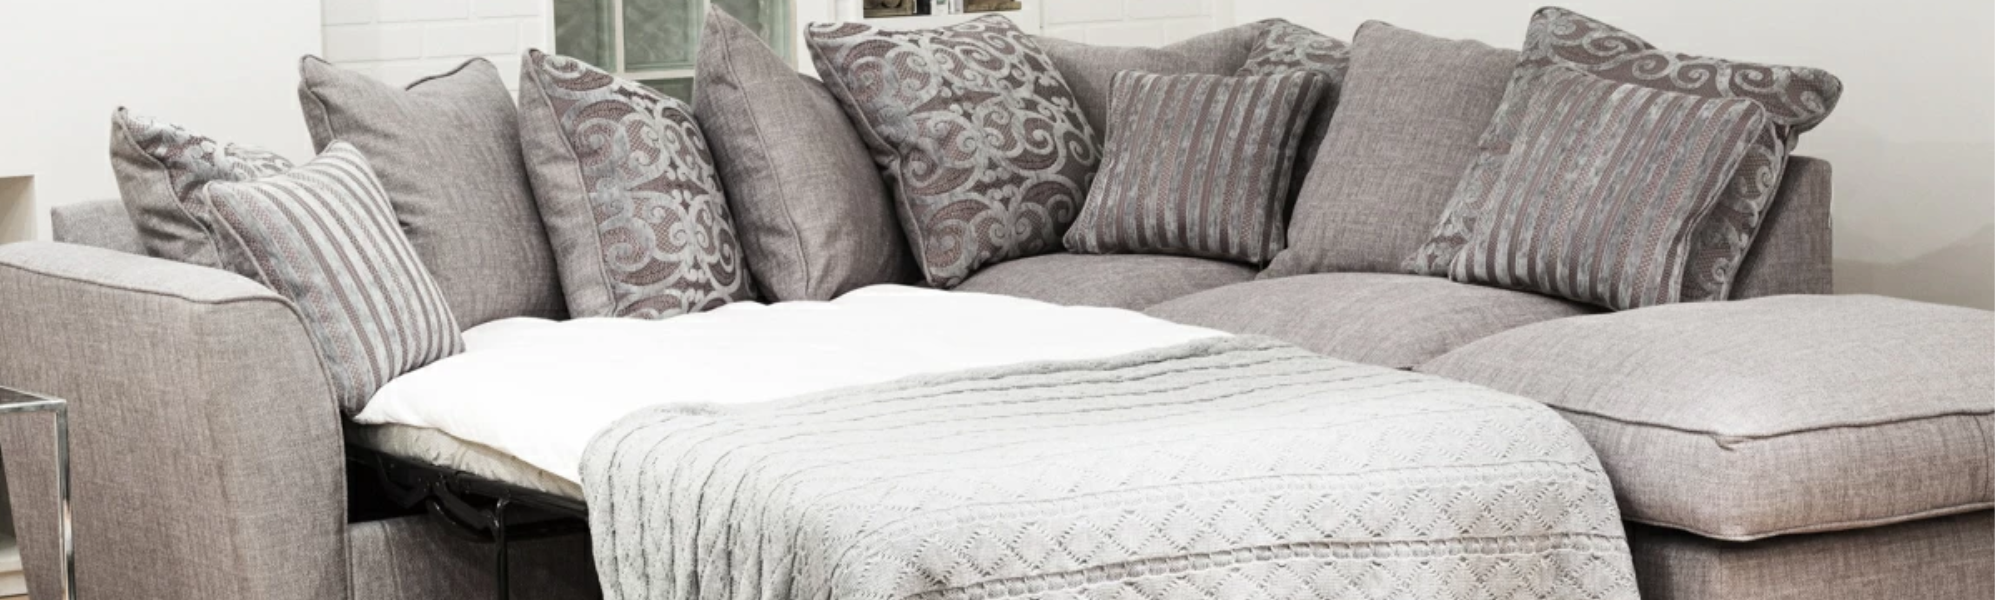 Luxury Sofa Beds - 1, 2, 3 Seater & Corner Sofas